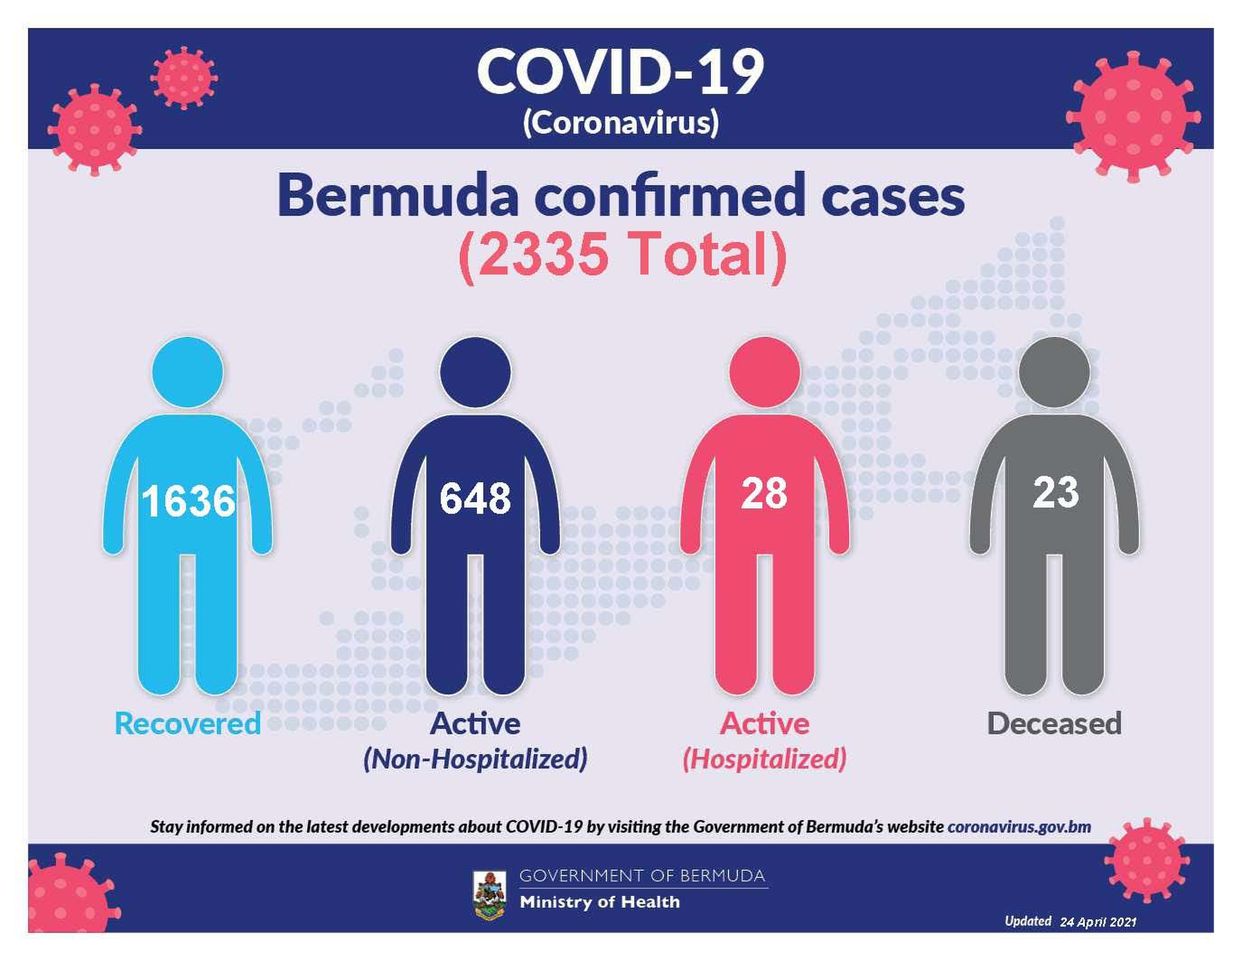 20 new COVID-19 cases reported in Bermuda, 24 April